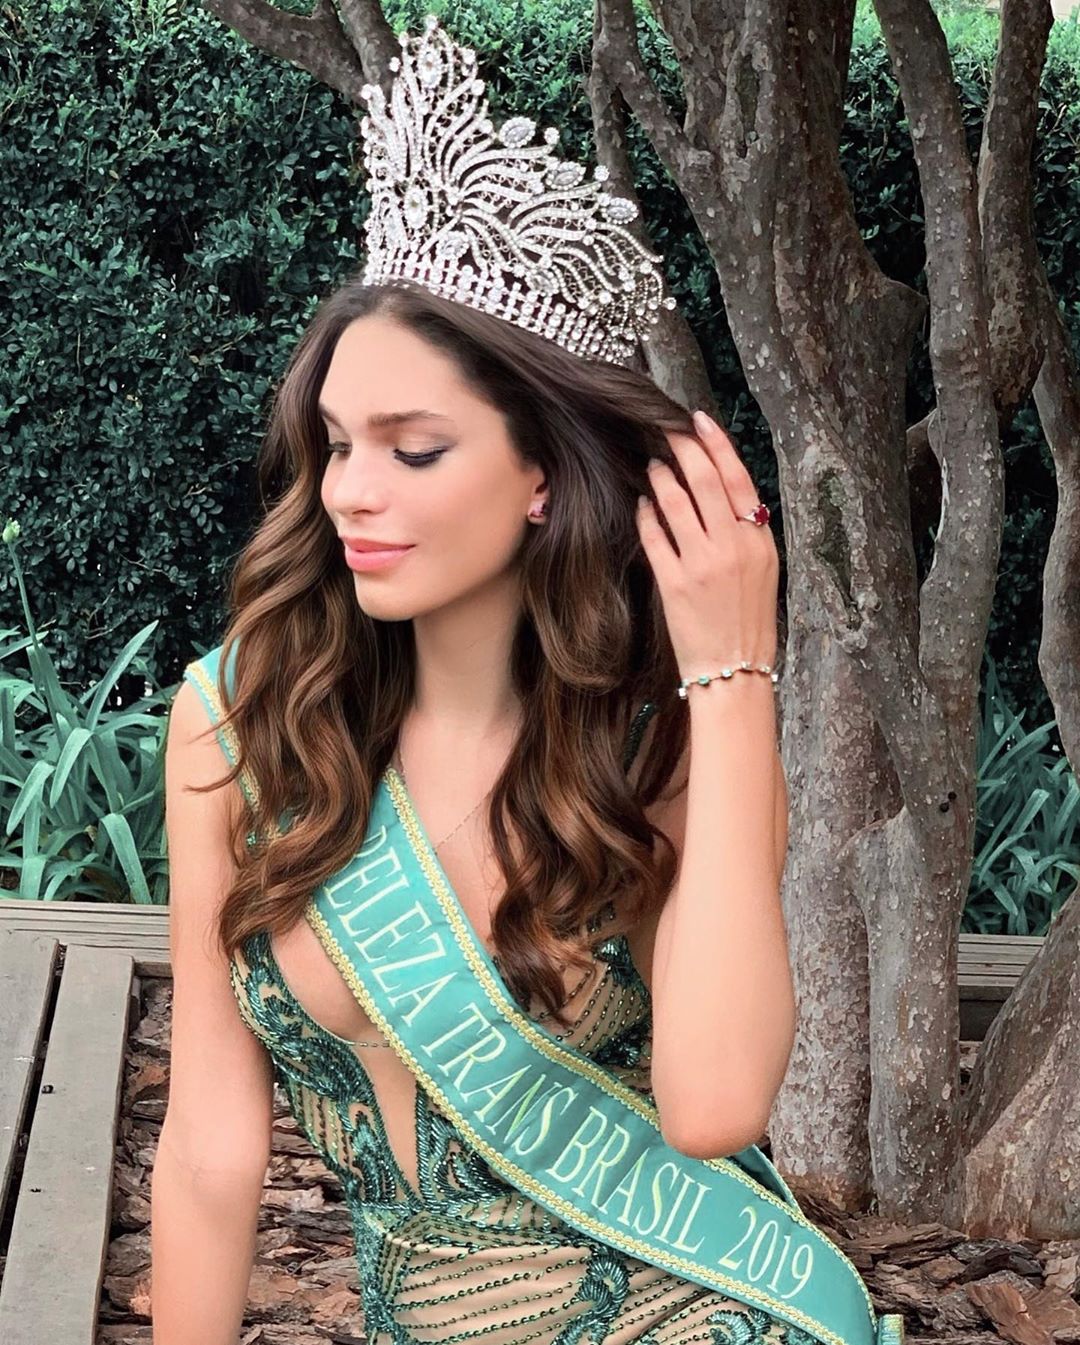 Ariella Moura – Brazilian Transgender Woman Wins Beauty Pageant Instagram